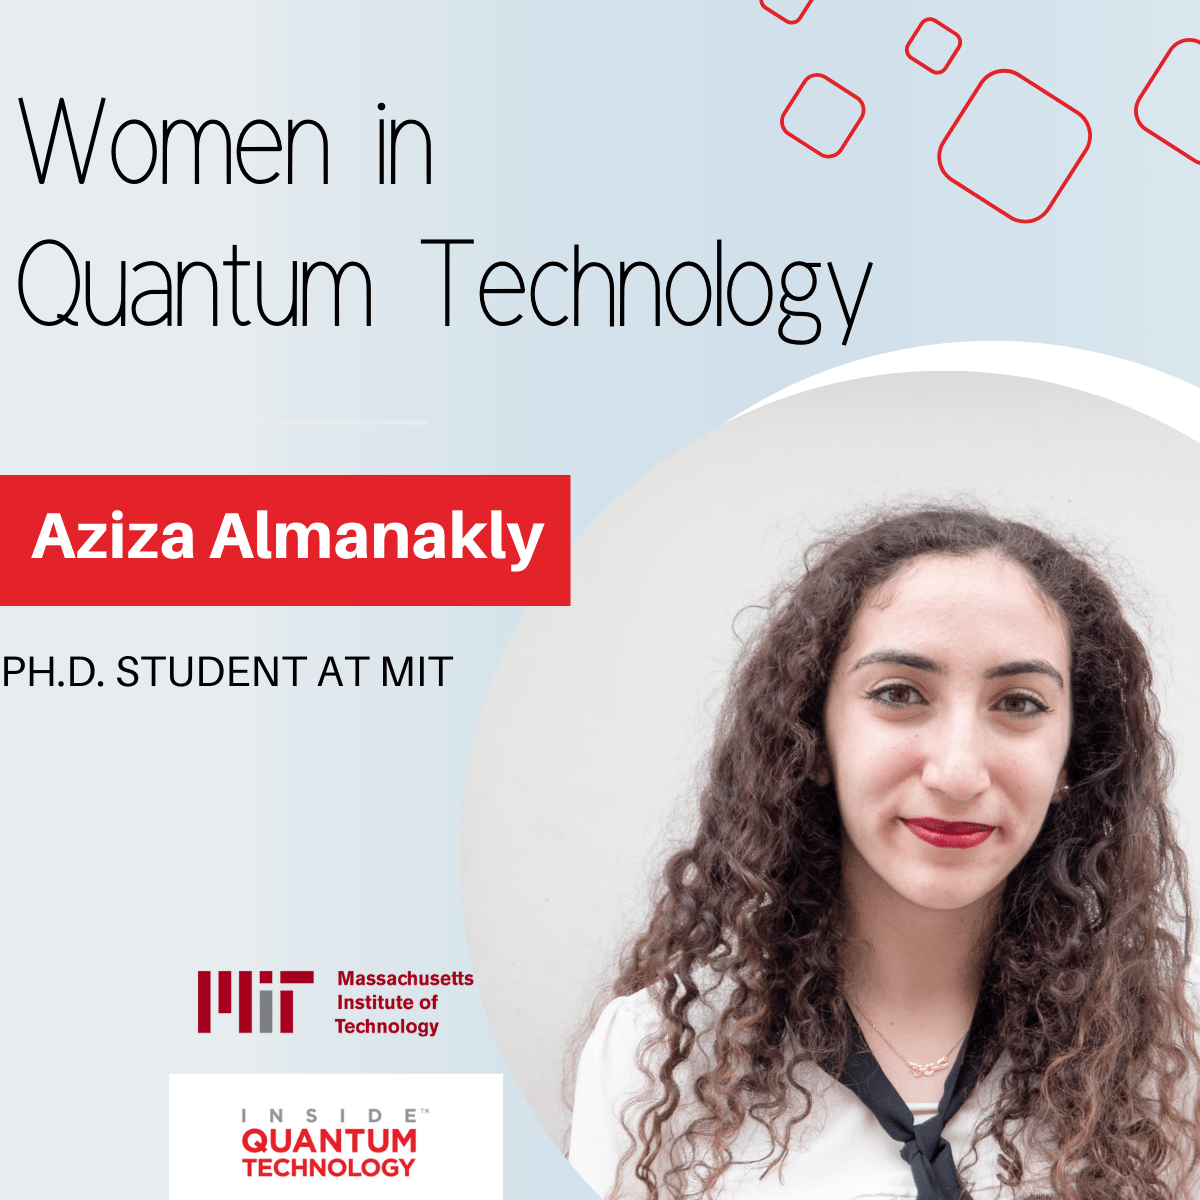 Aziza Almanakly, estudante de pós-graduação no MIT, discute sua formação e pesquisa em computação quântica e fotônica.